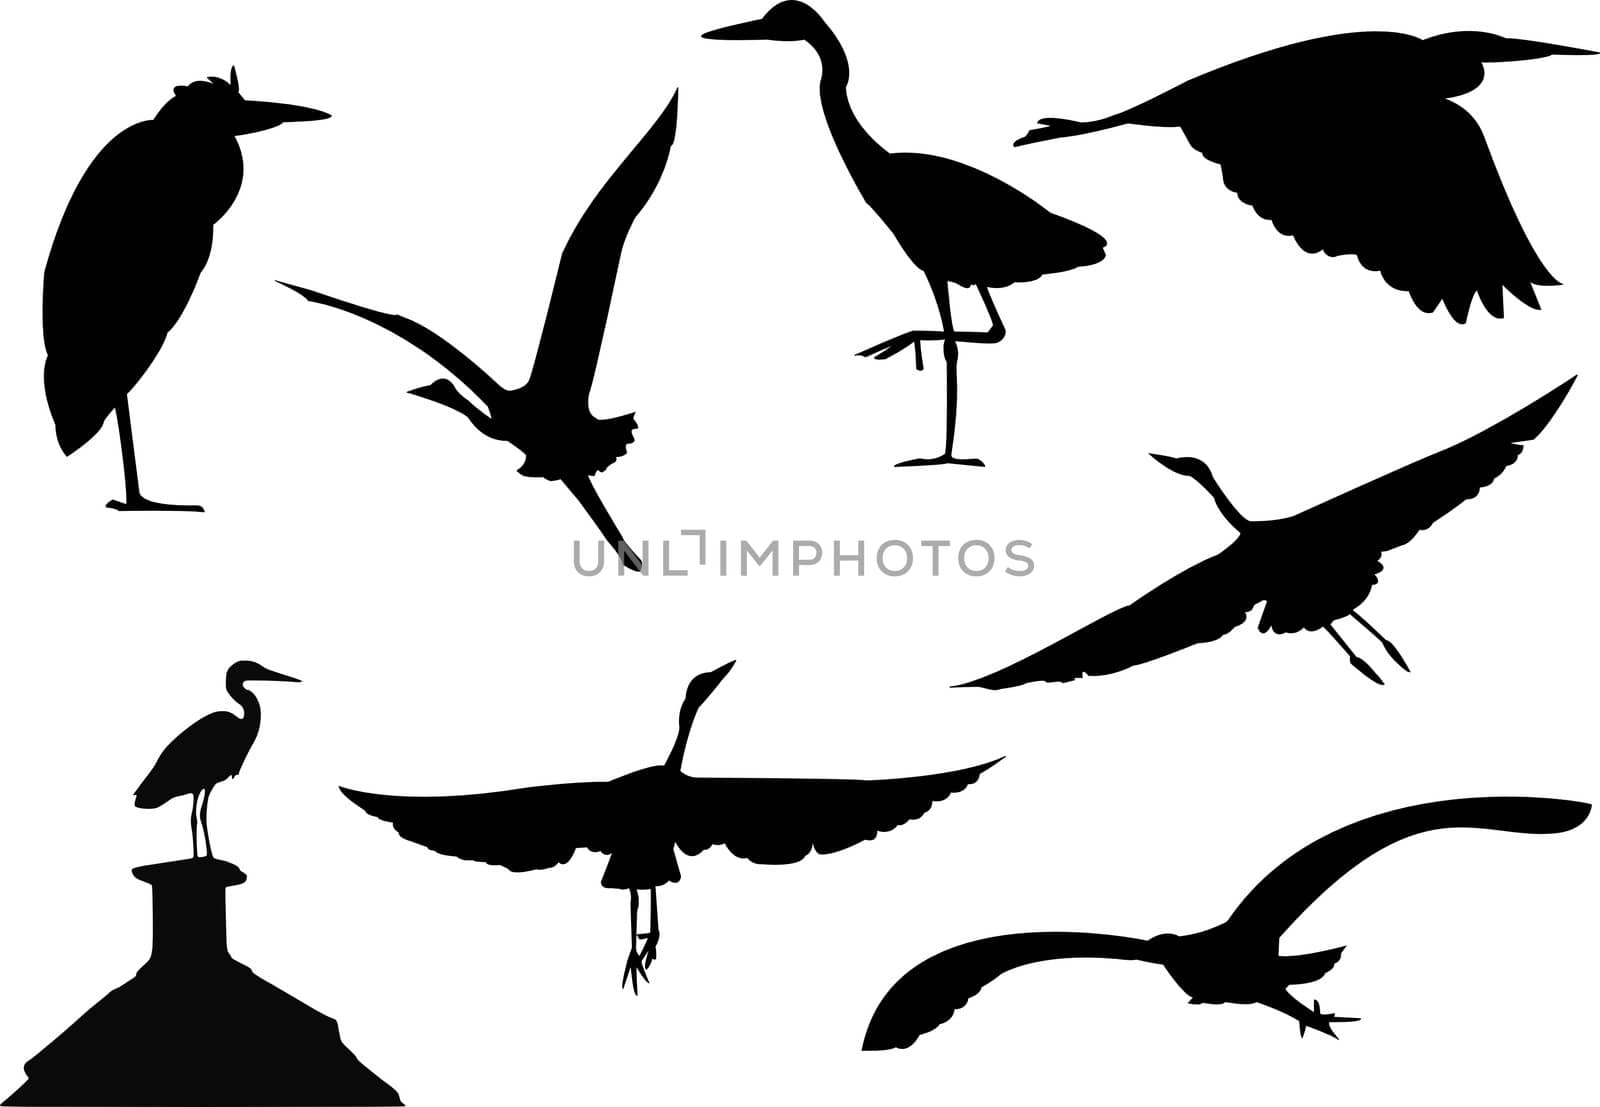 Bird silhouettes by twieja